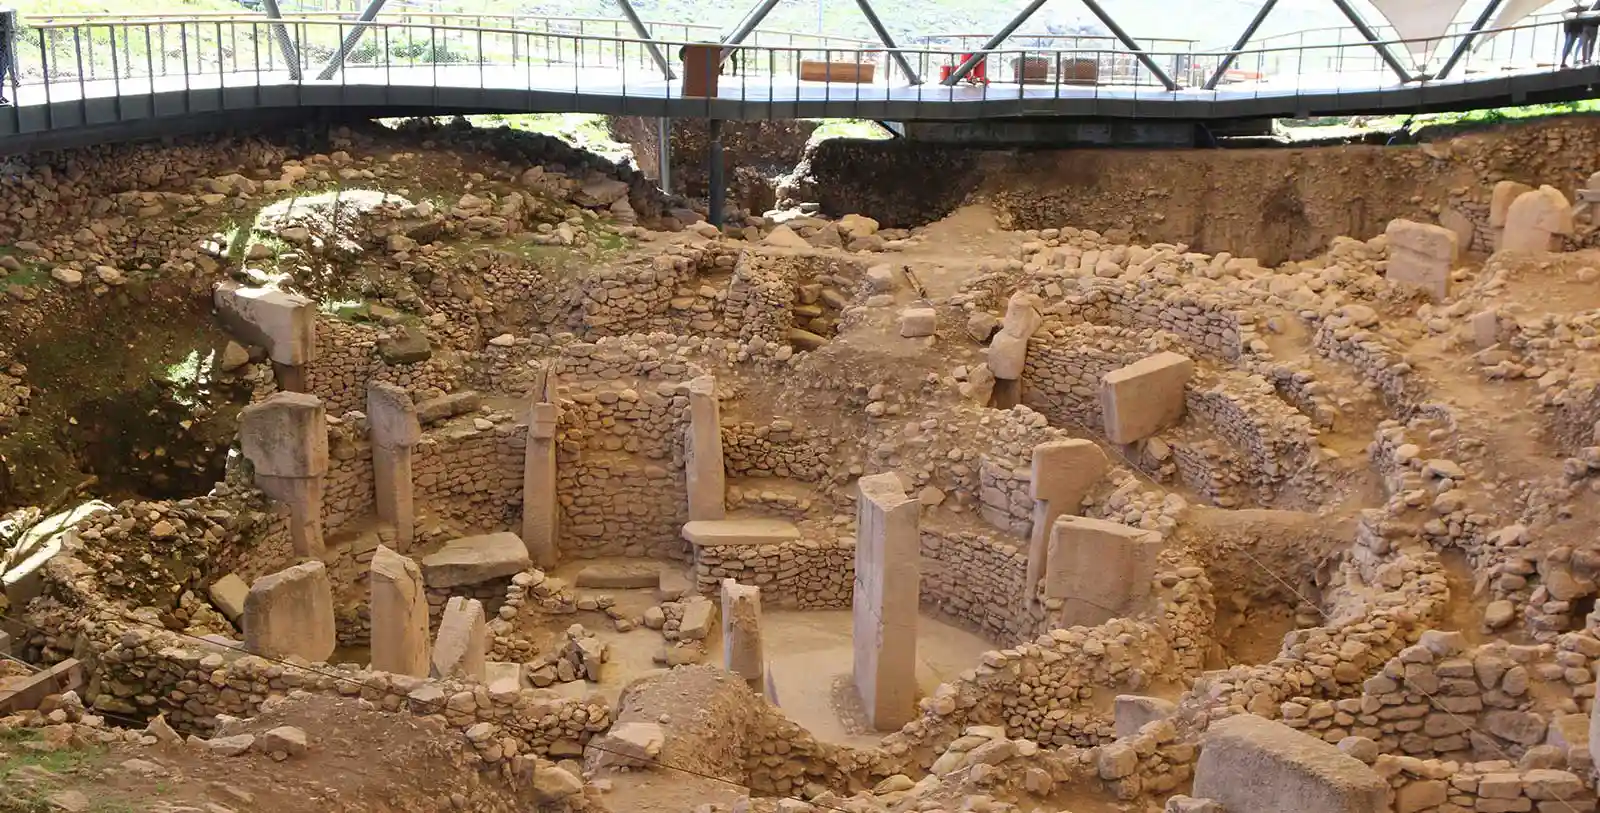 Göbeklitepe – Şanlıurfa is a Heritage located in Turkey